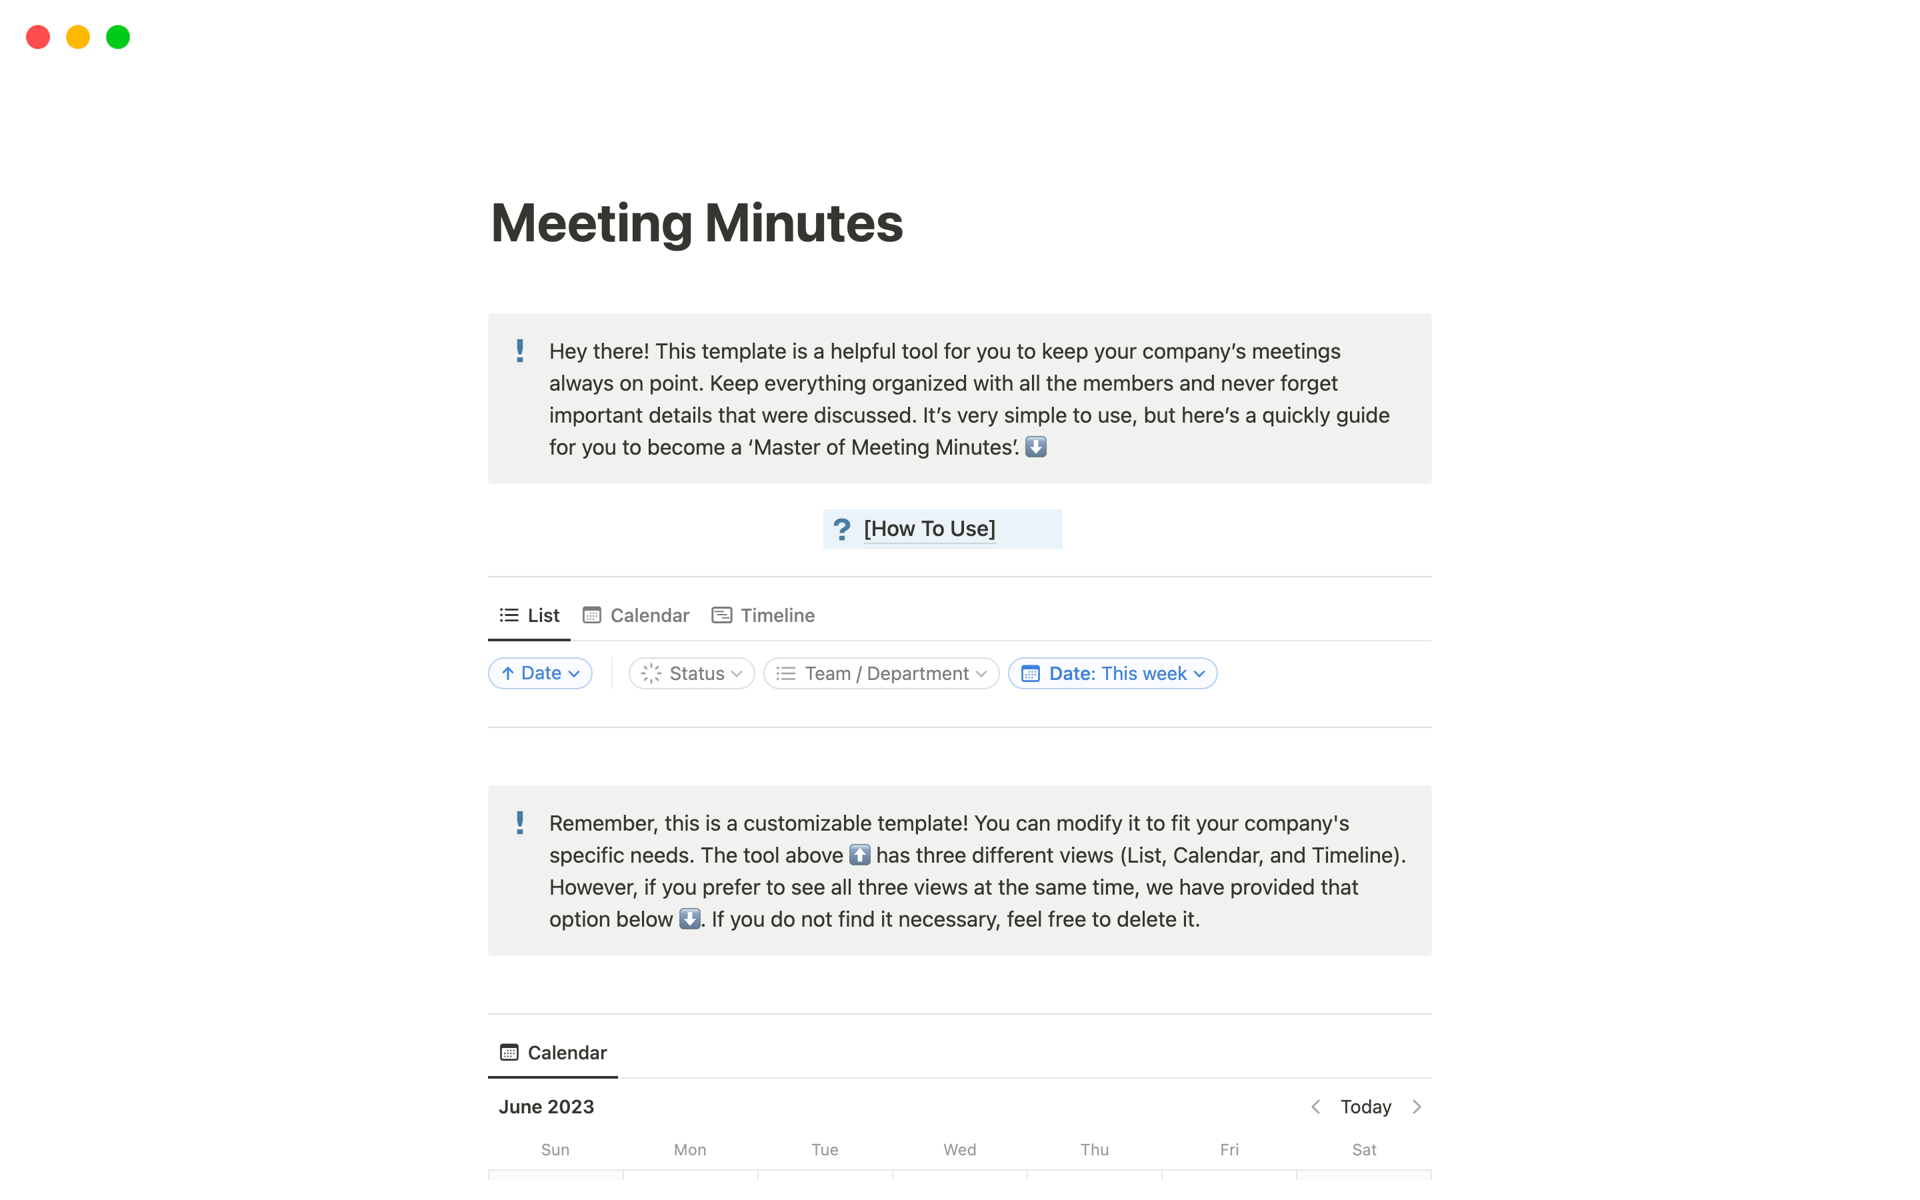 Aperçu du modèle de Meeting Minutes